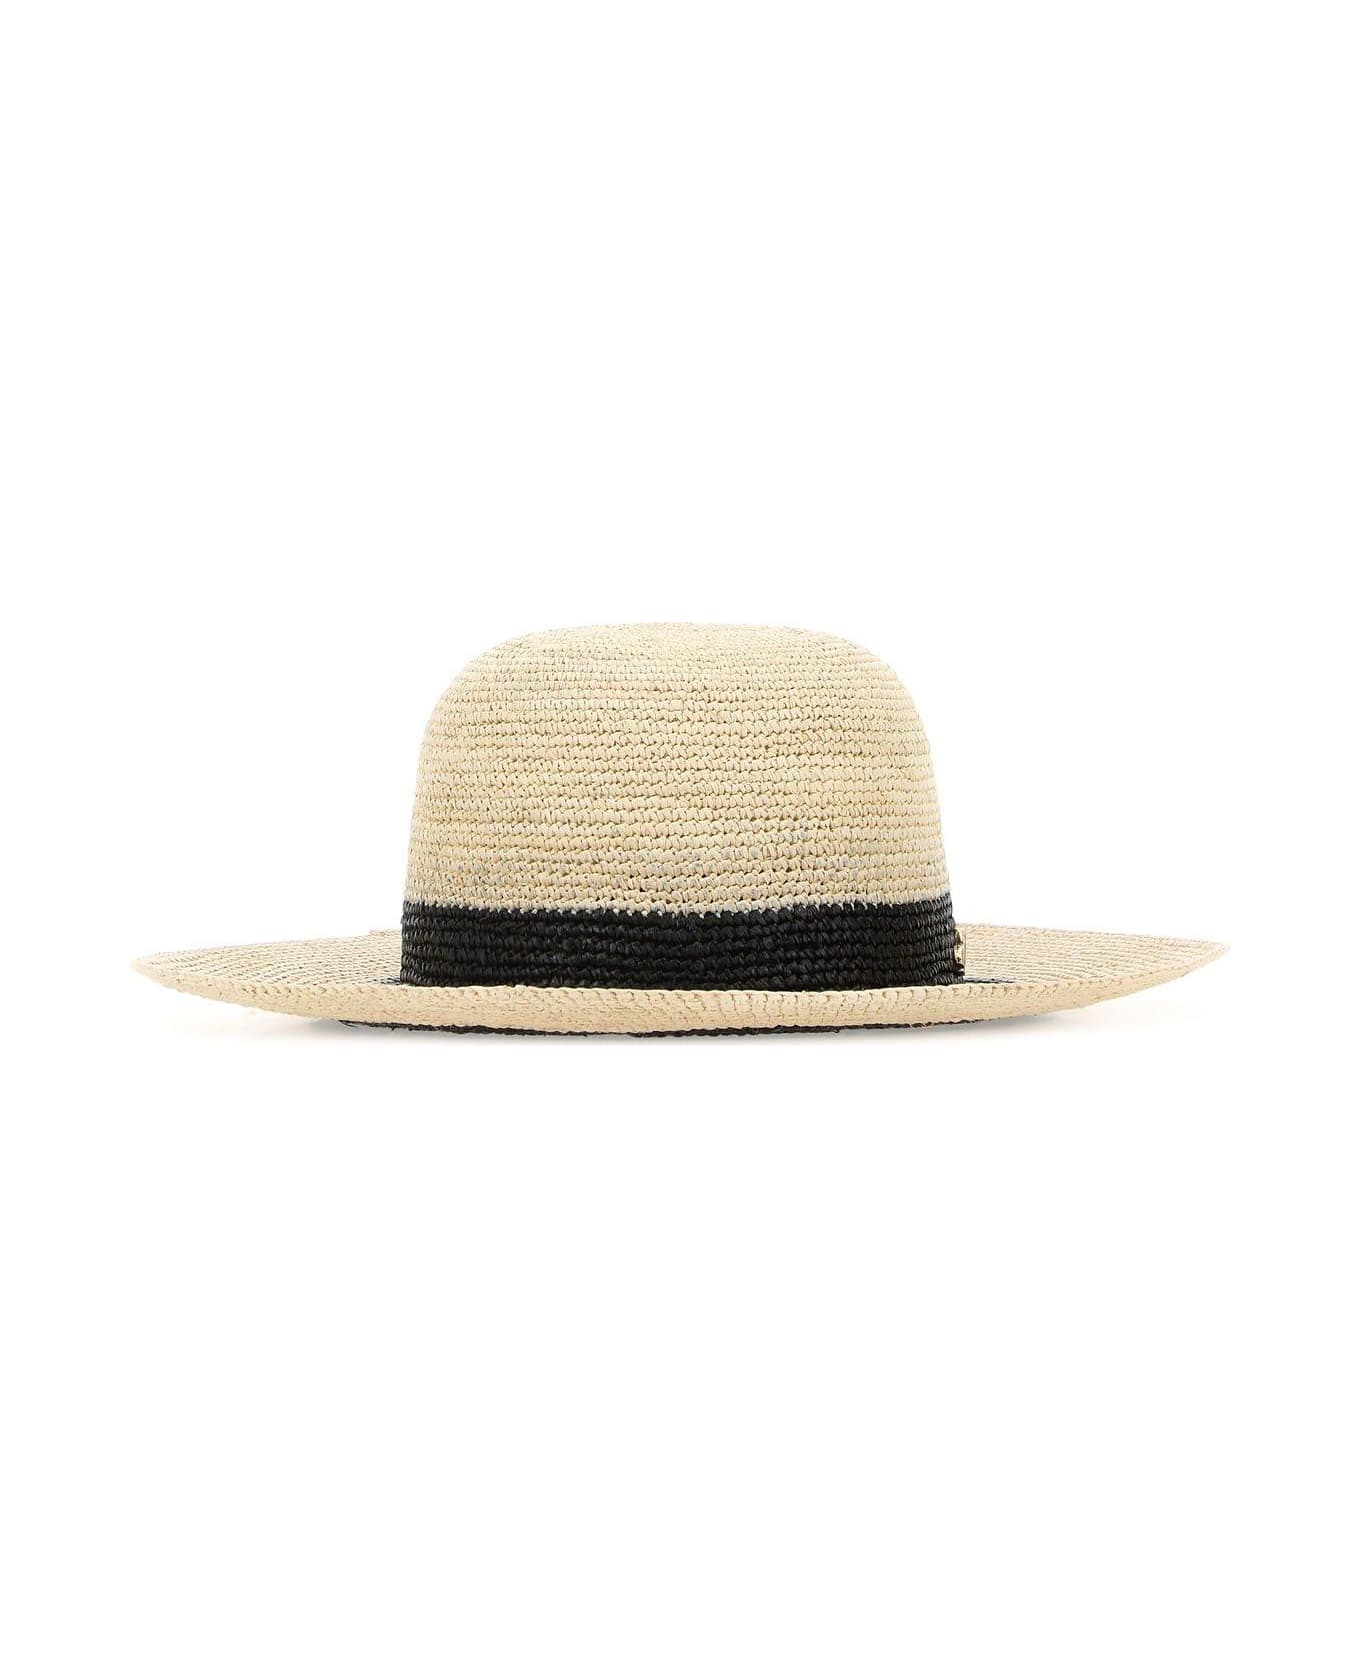 Borsalino Straw Hat - Nero 帽子